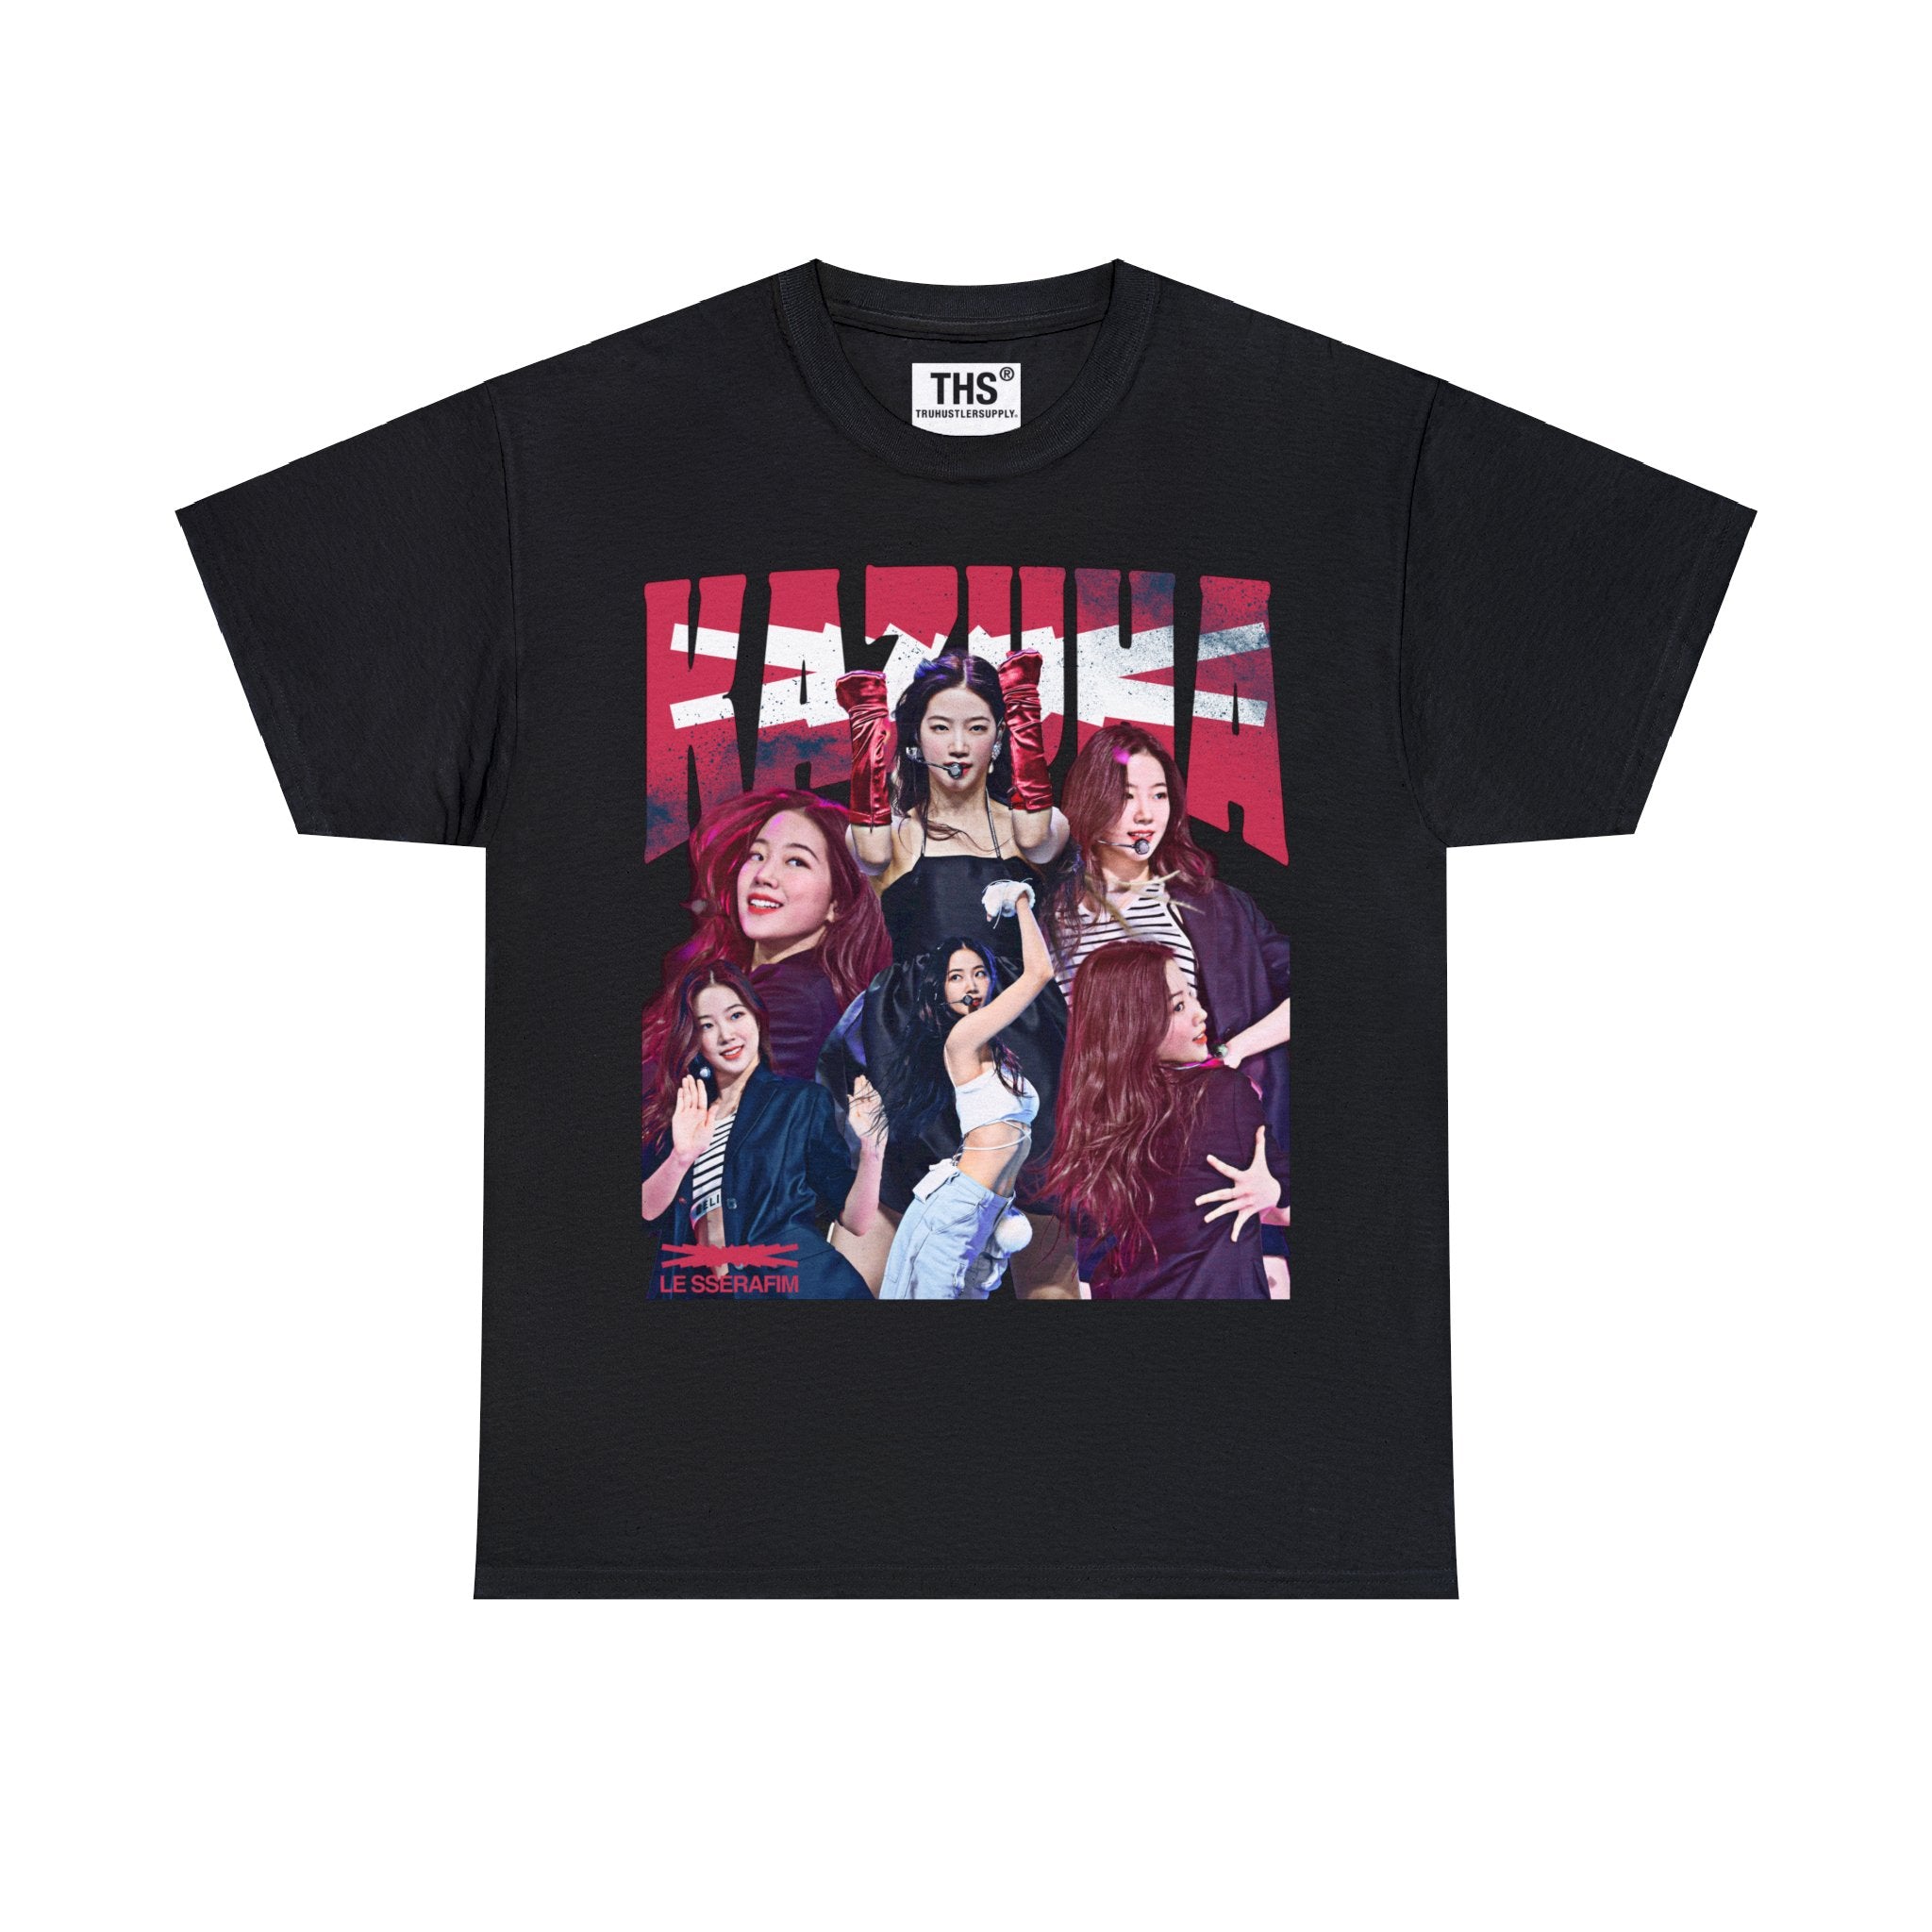 Kazuha Le Sserafim Bootleg Graphic T-Shirt for Fans – Truhustlersupply